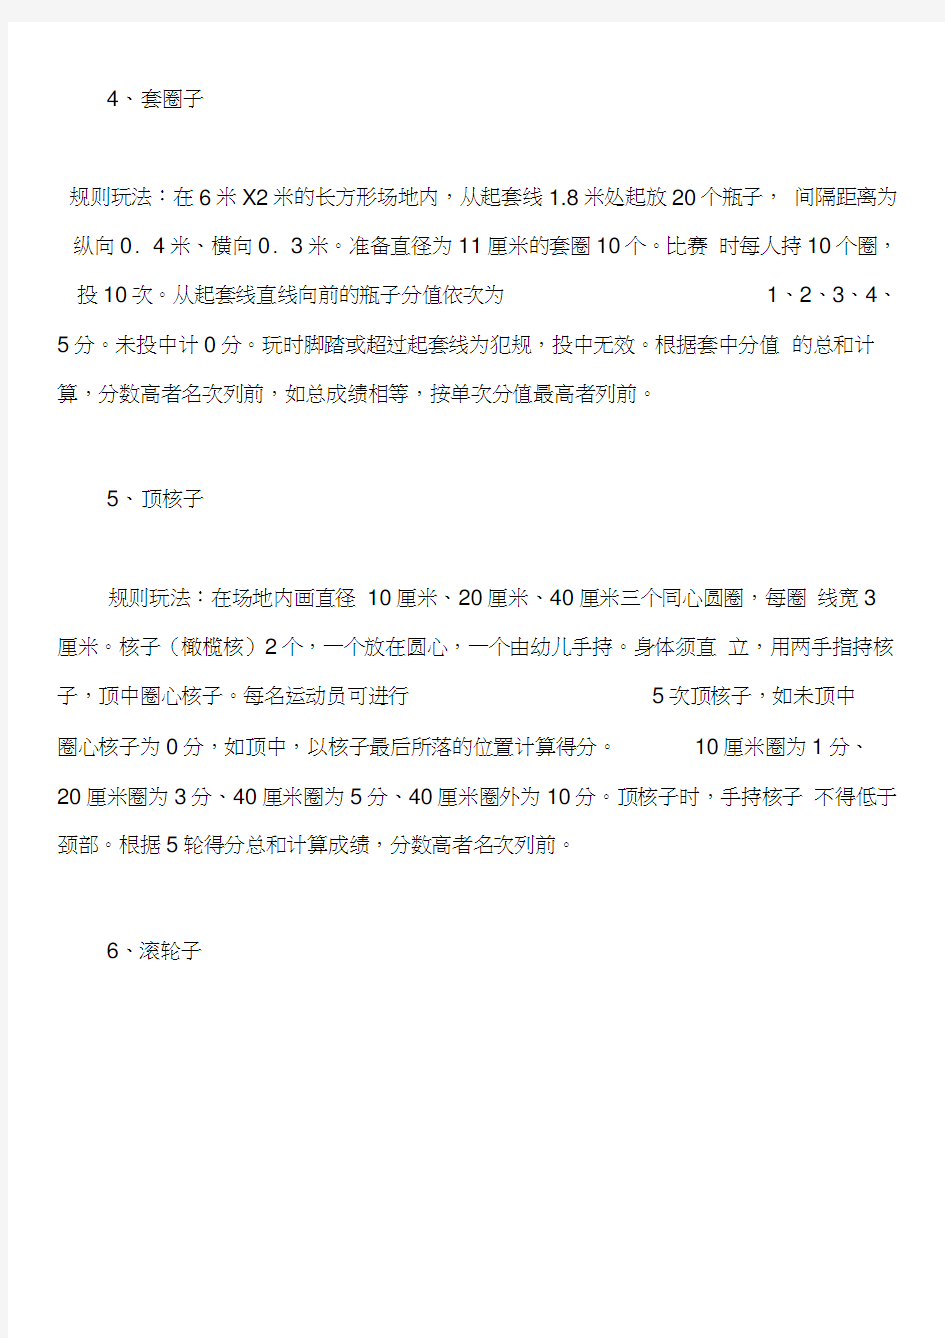 幼儿园资料文档9个幼儿游戏：上海弄堂游戏